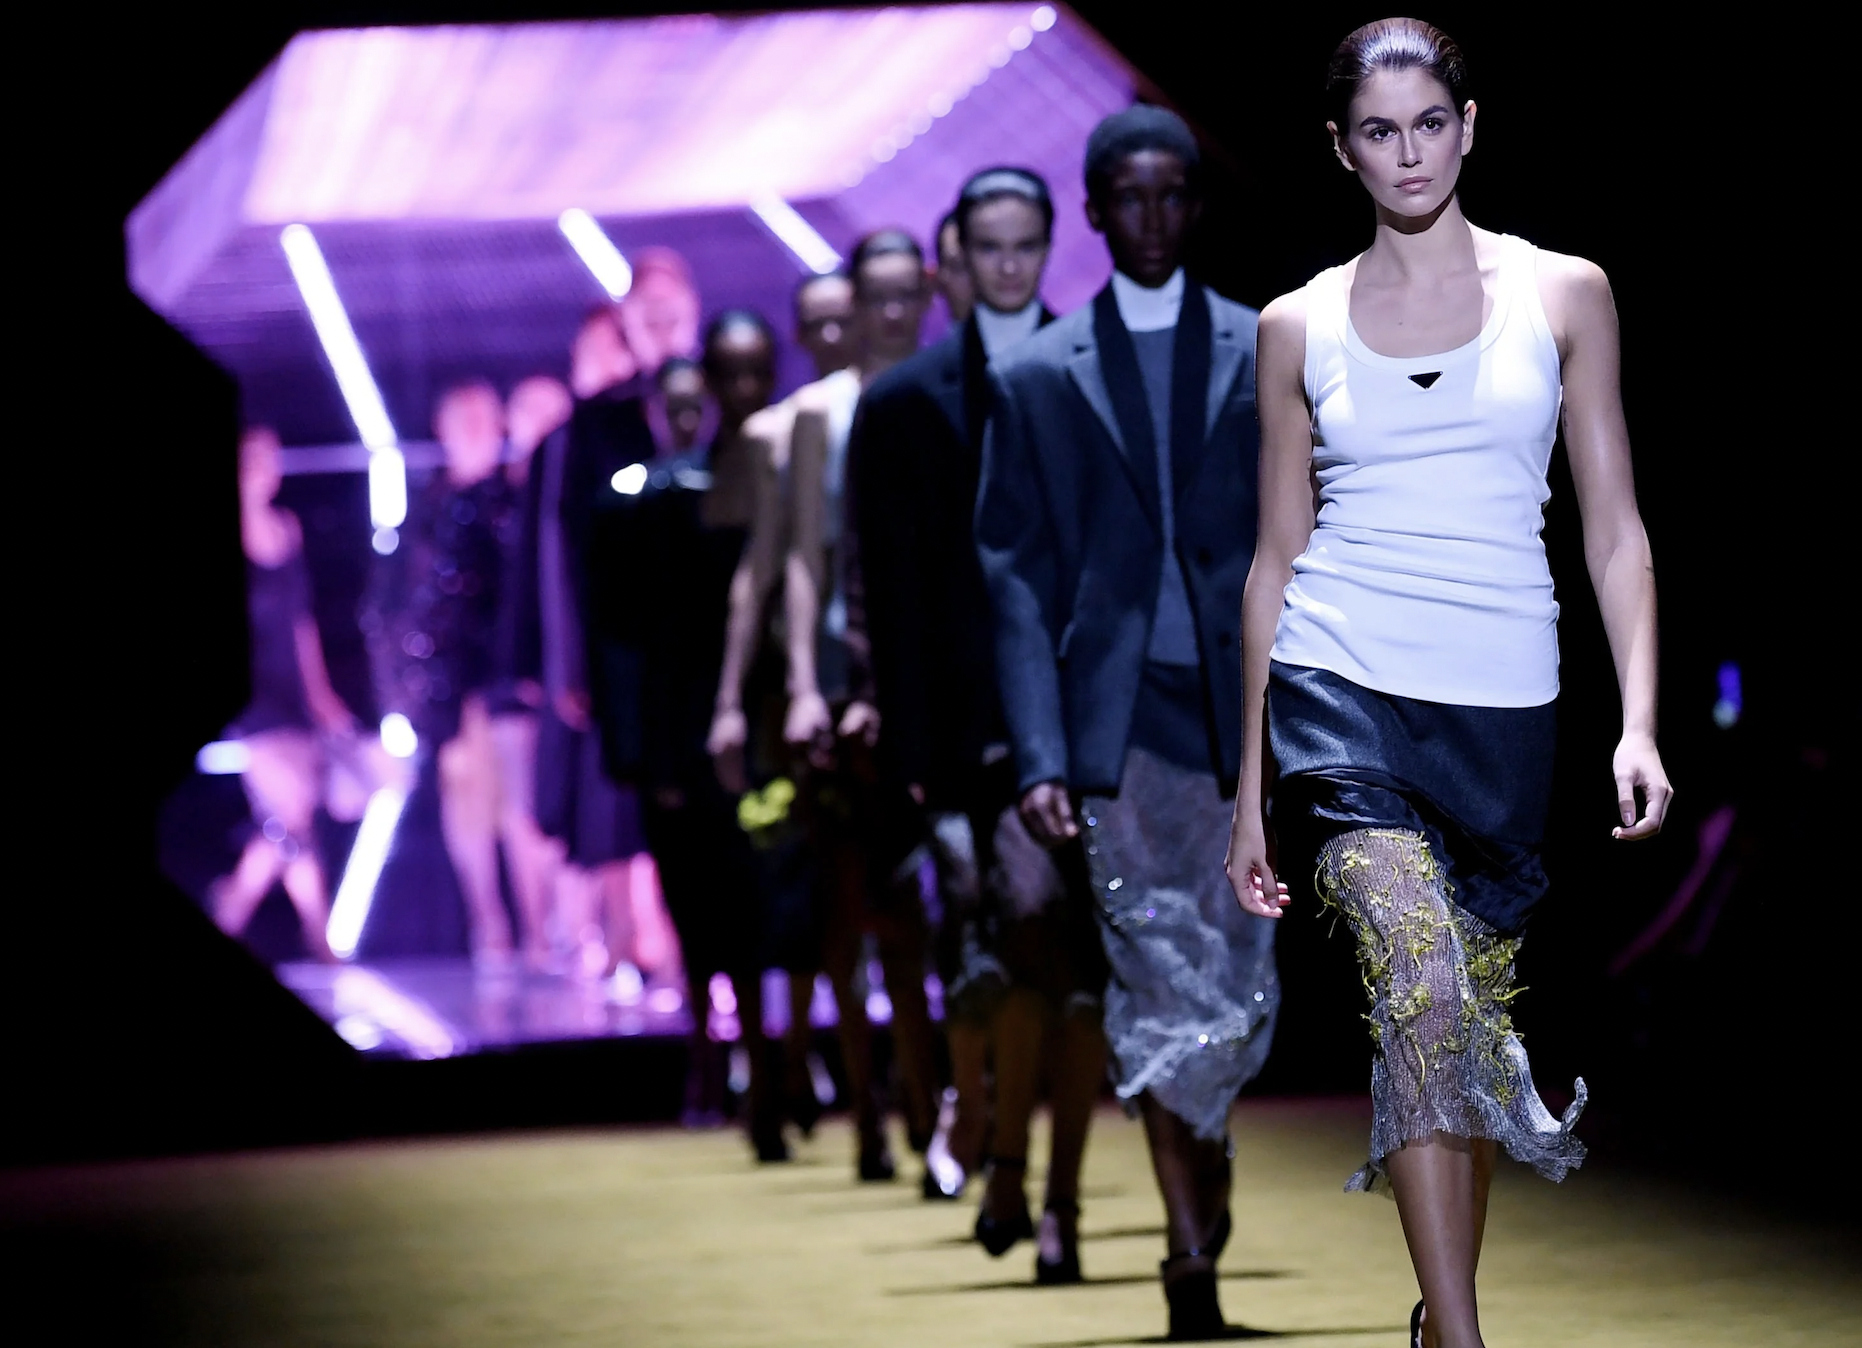 Parada Resurge Triunfante: Recupera el Primer Lugar en la Industria de la Moda según Lyst Index